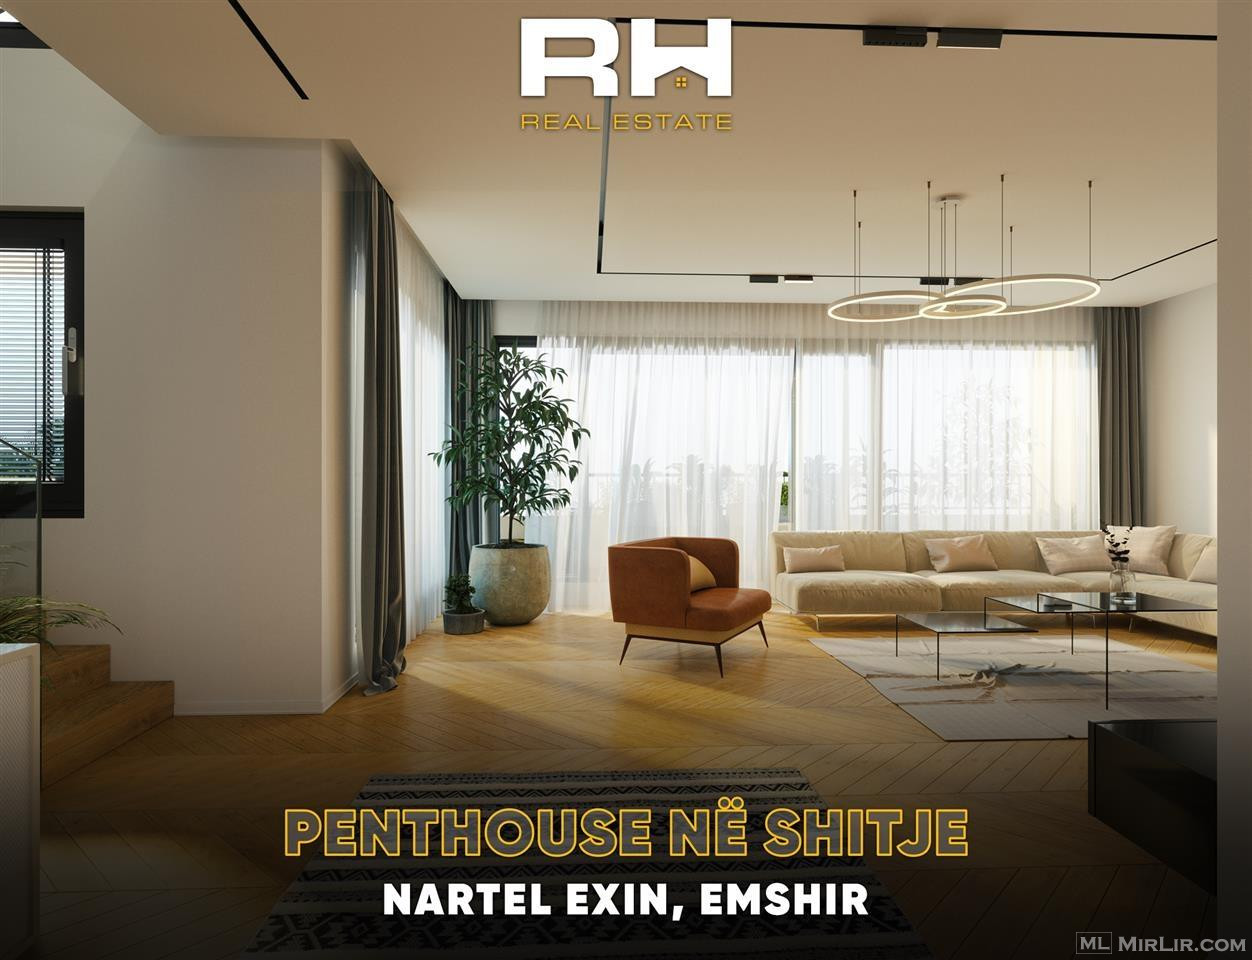 Penthouse – Duplex 232m² + 230m² në #SHITJE në Emshir